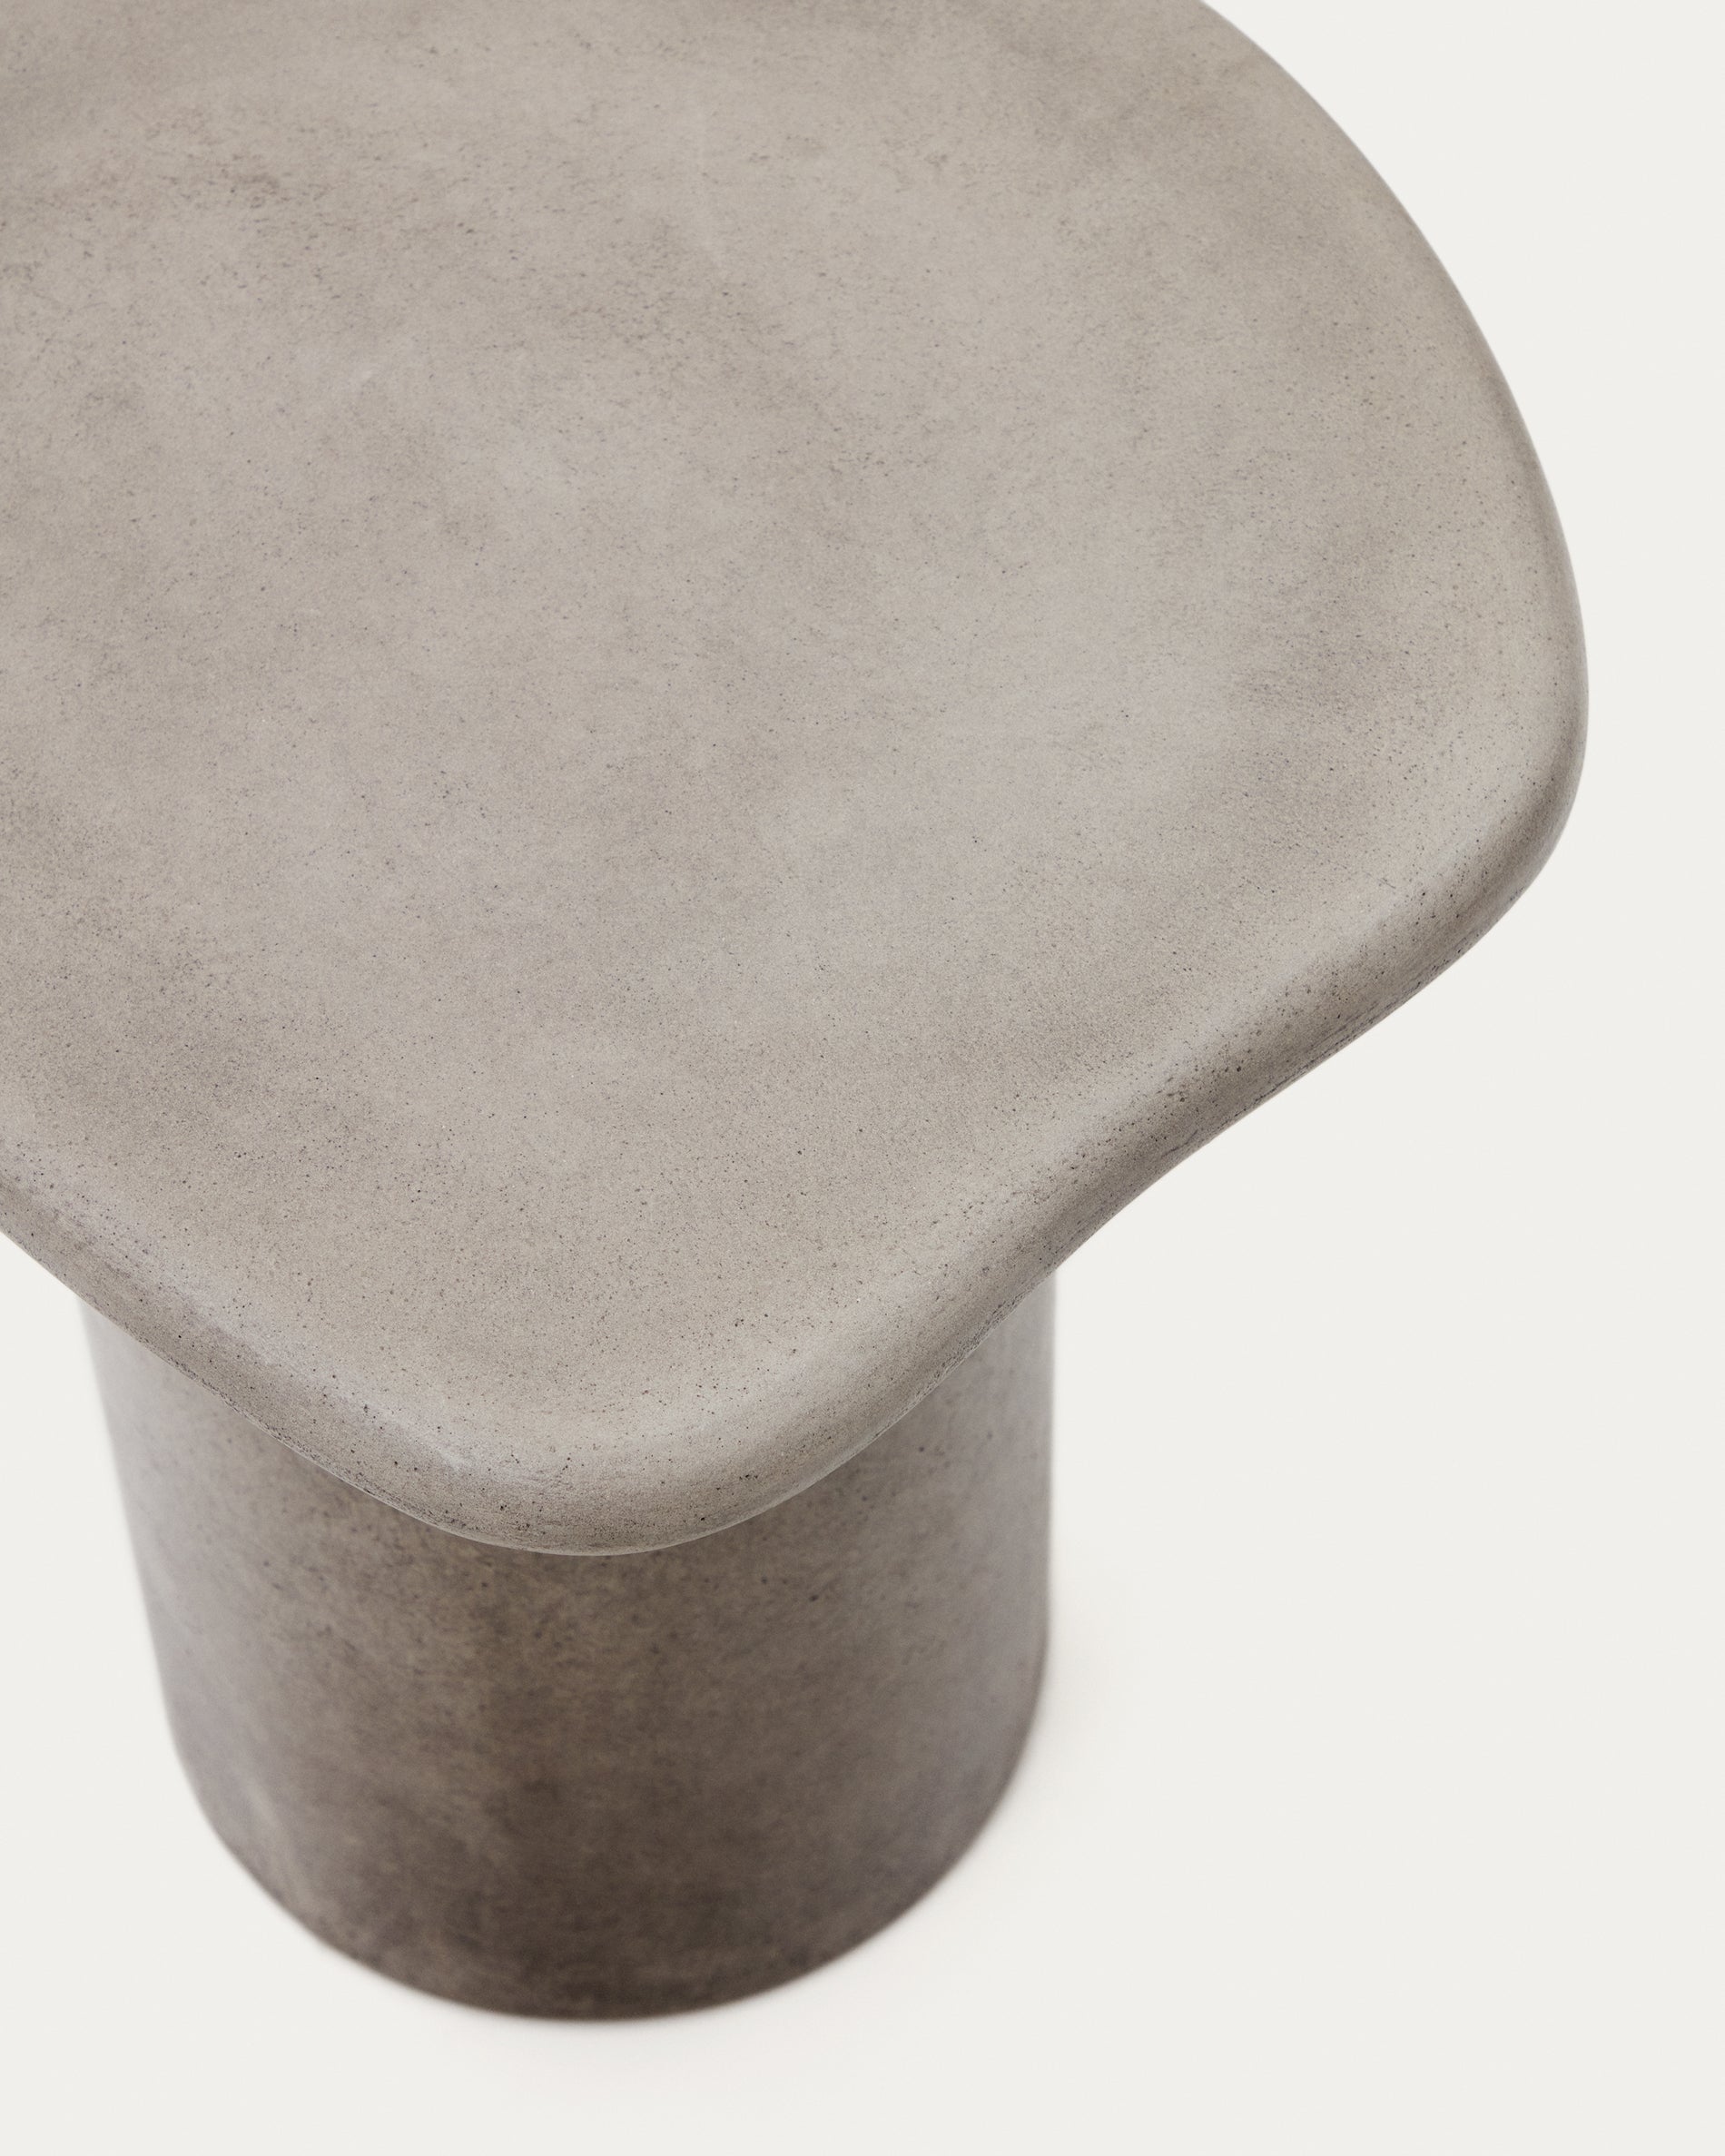 Macarella cement oldalsó asztal, 48 x 47 cm